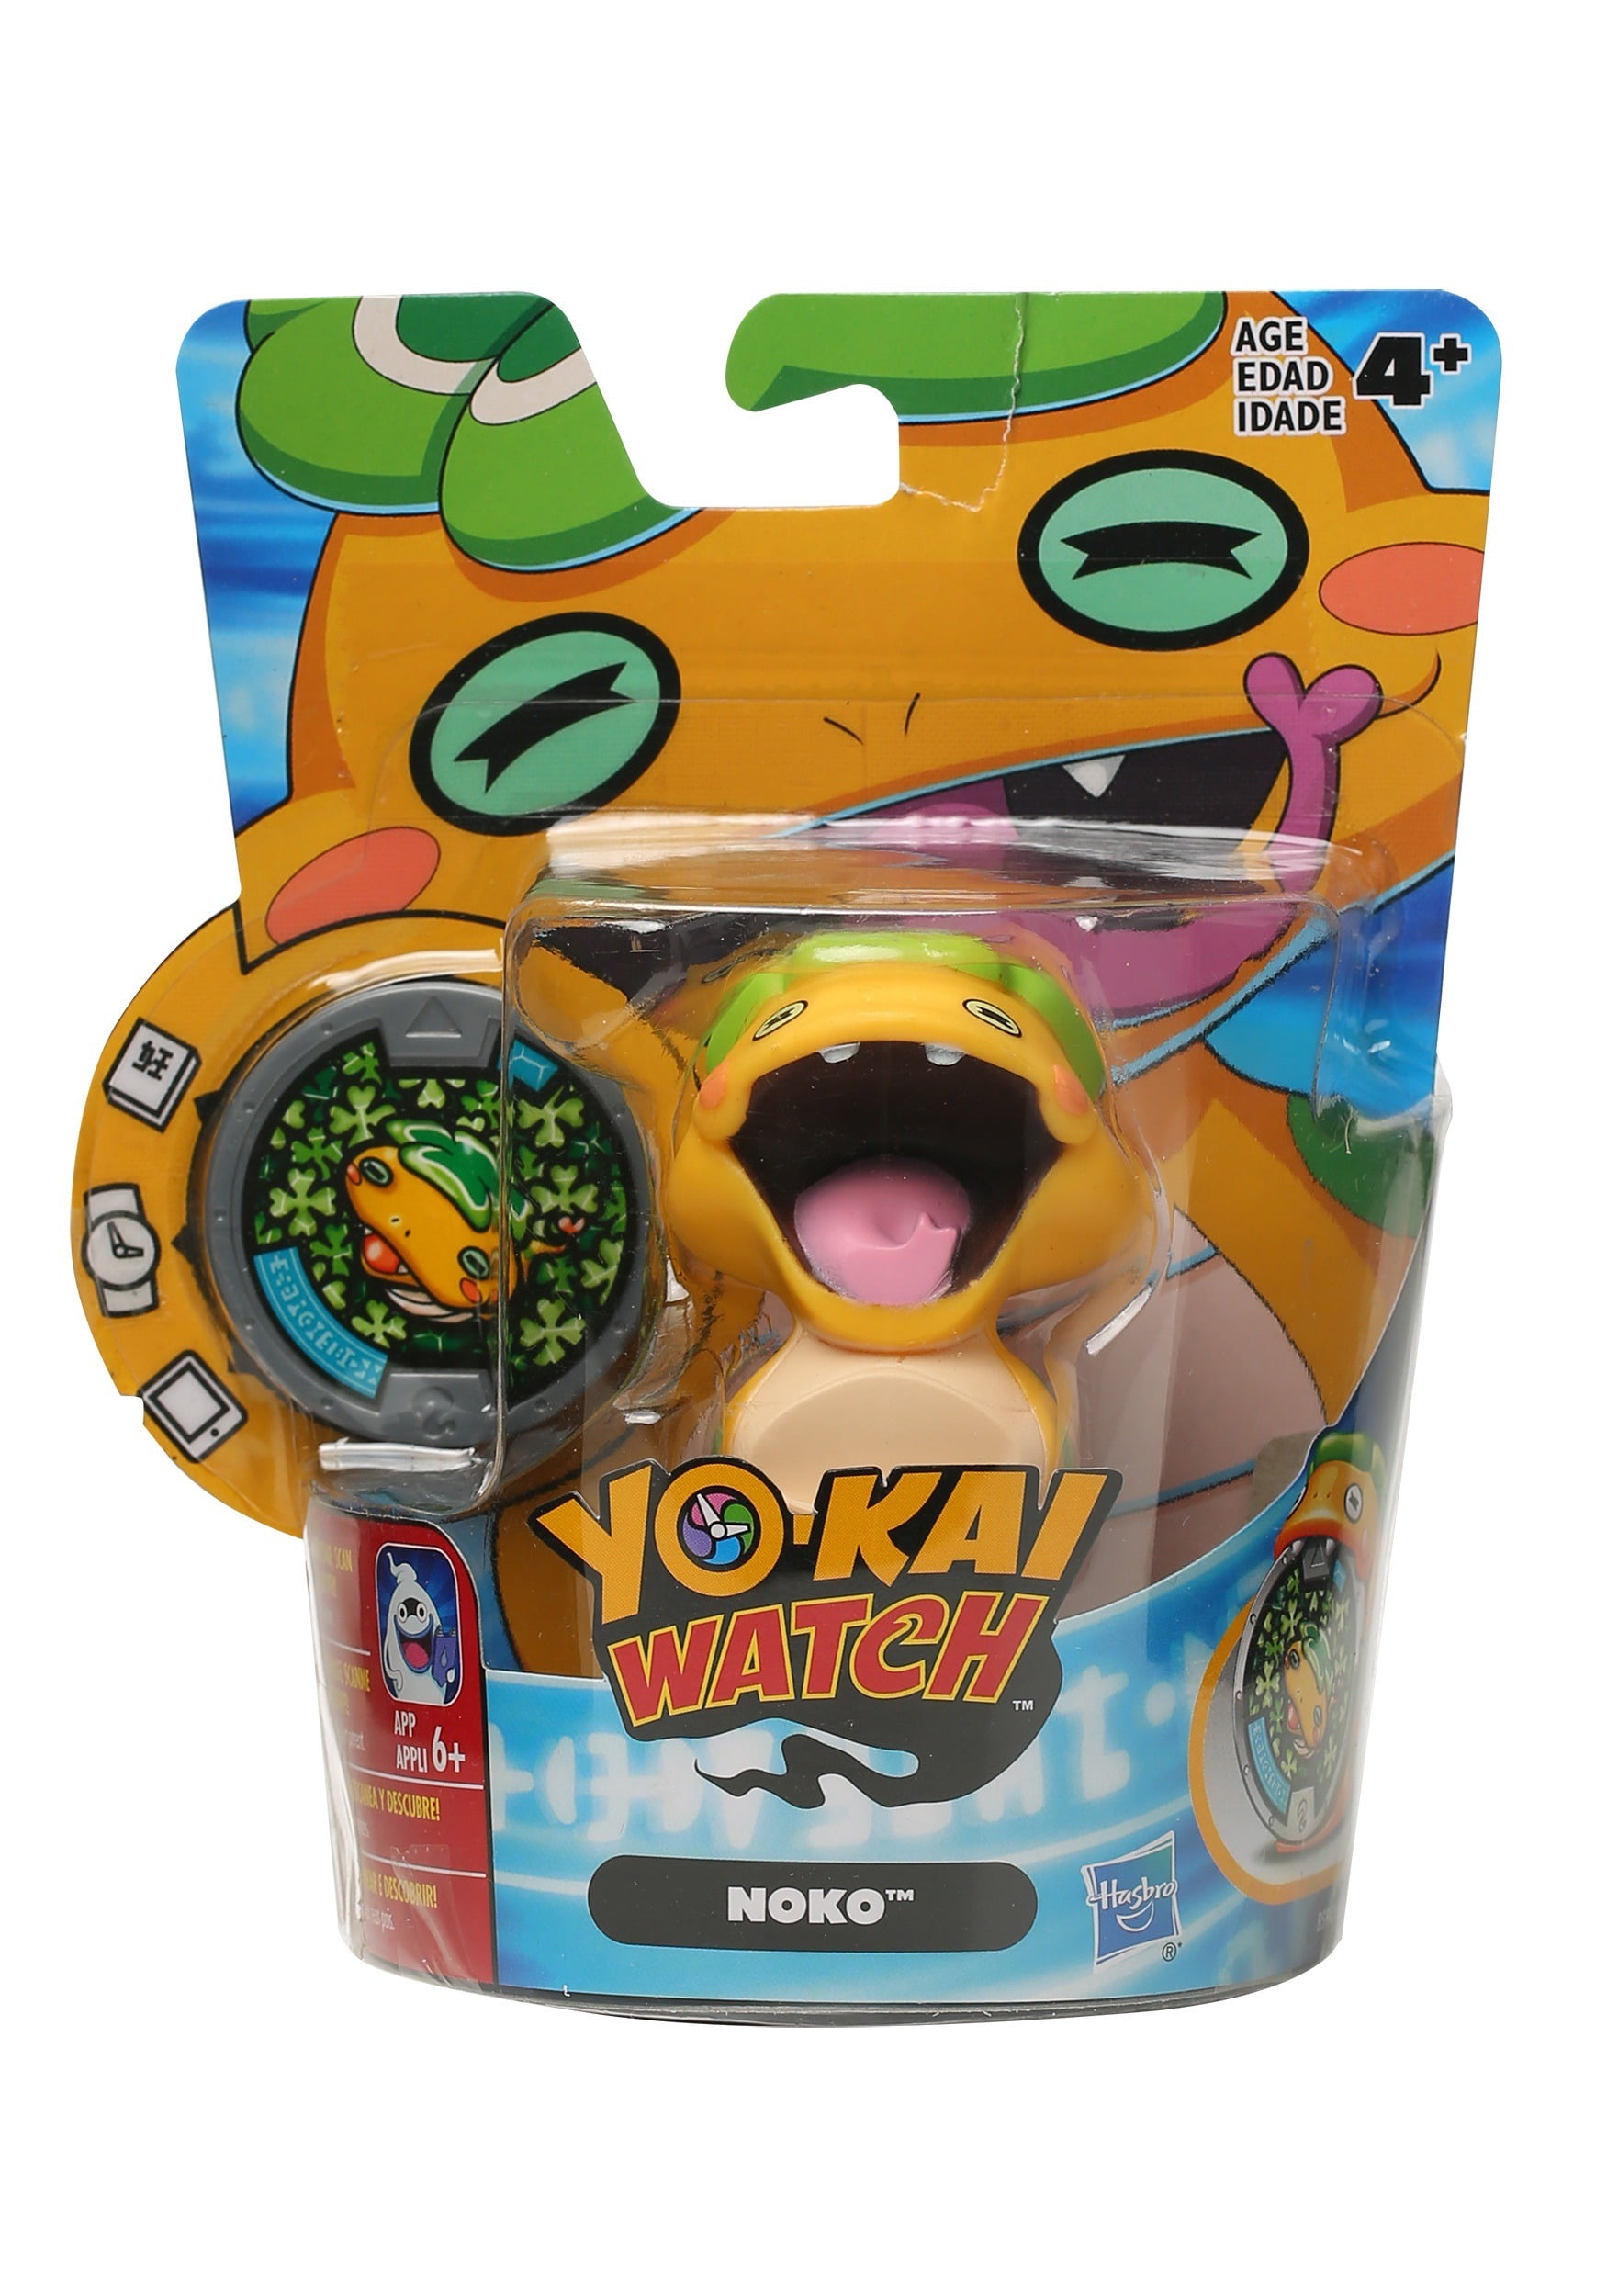 Yo-kai Watch Toy 272533